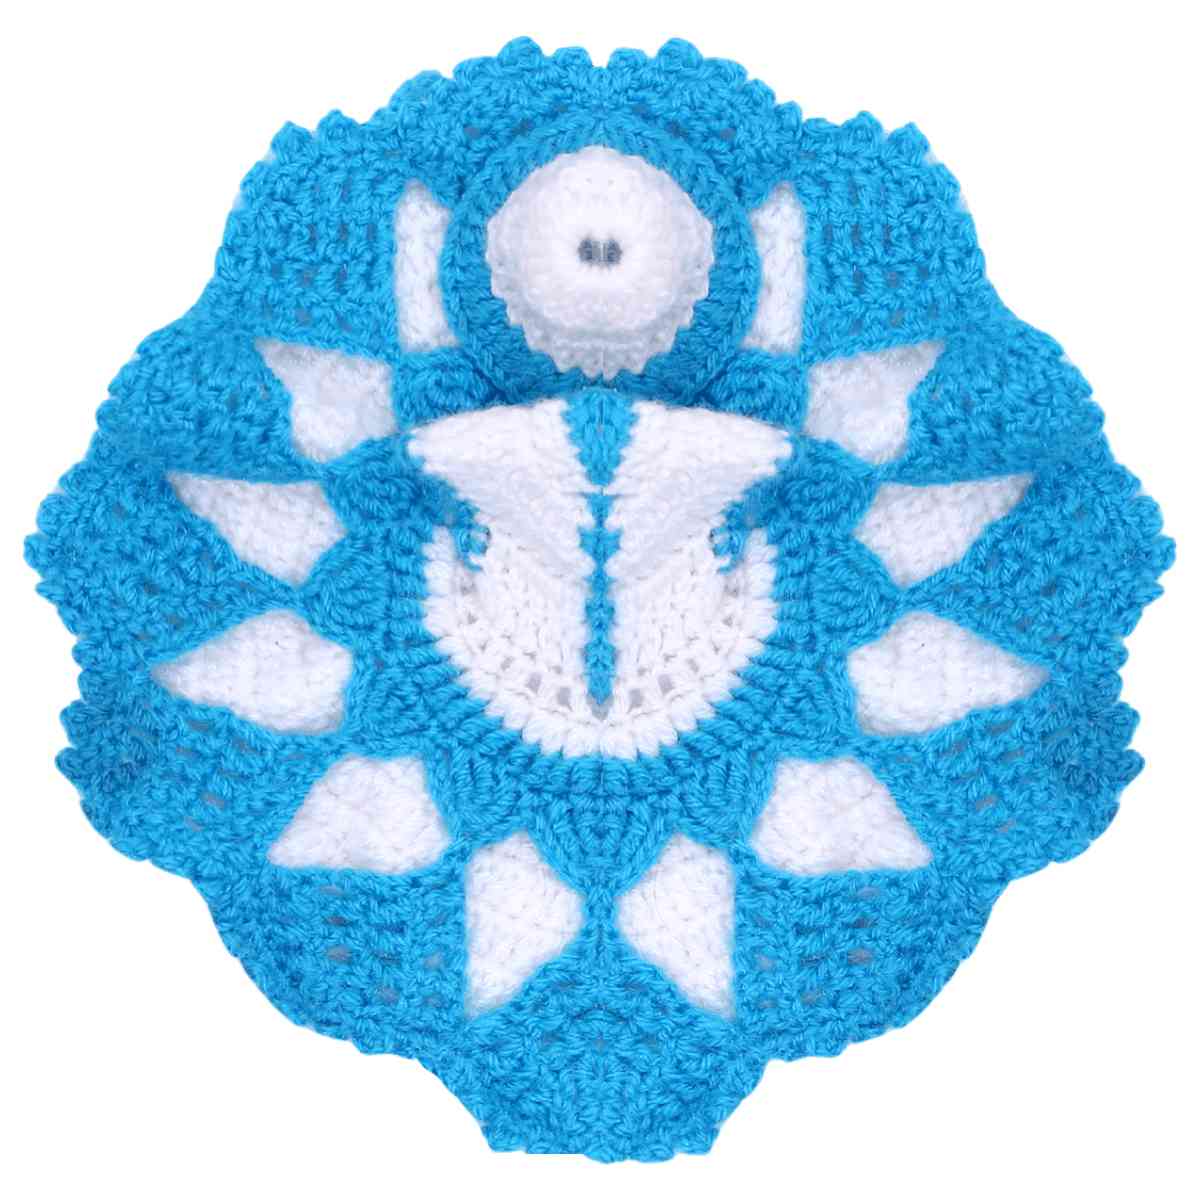 कान्हा जी की सर्दी की पोशाक || Laddu Gopal Crochet Dress #12 || Bansuri -  YouTube | Crochet flower tutorial, Diy seed bead earrings, Crochet thread  patterns